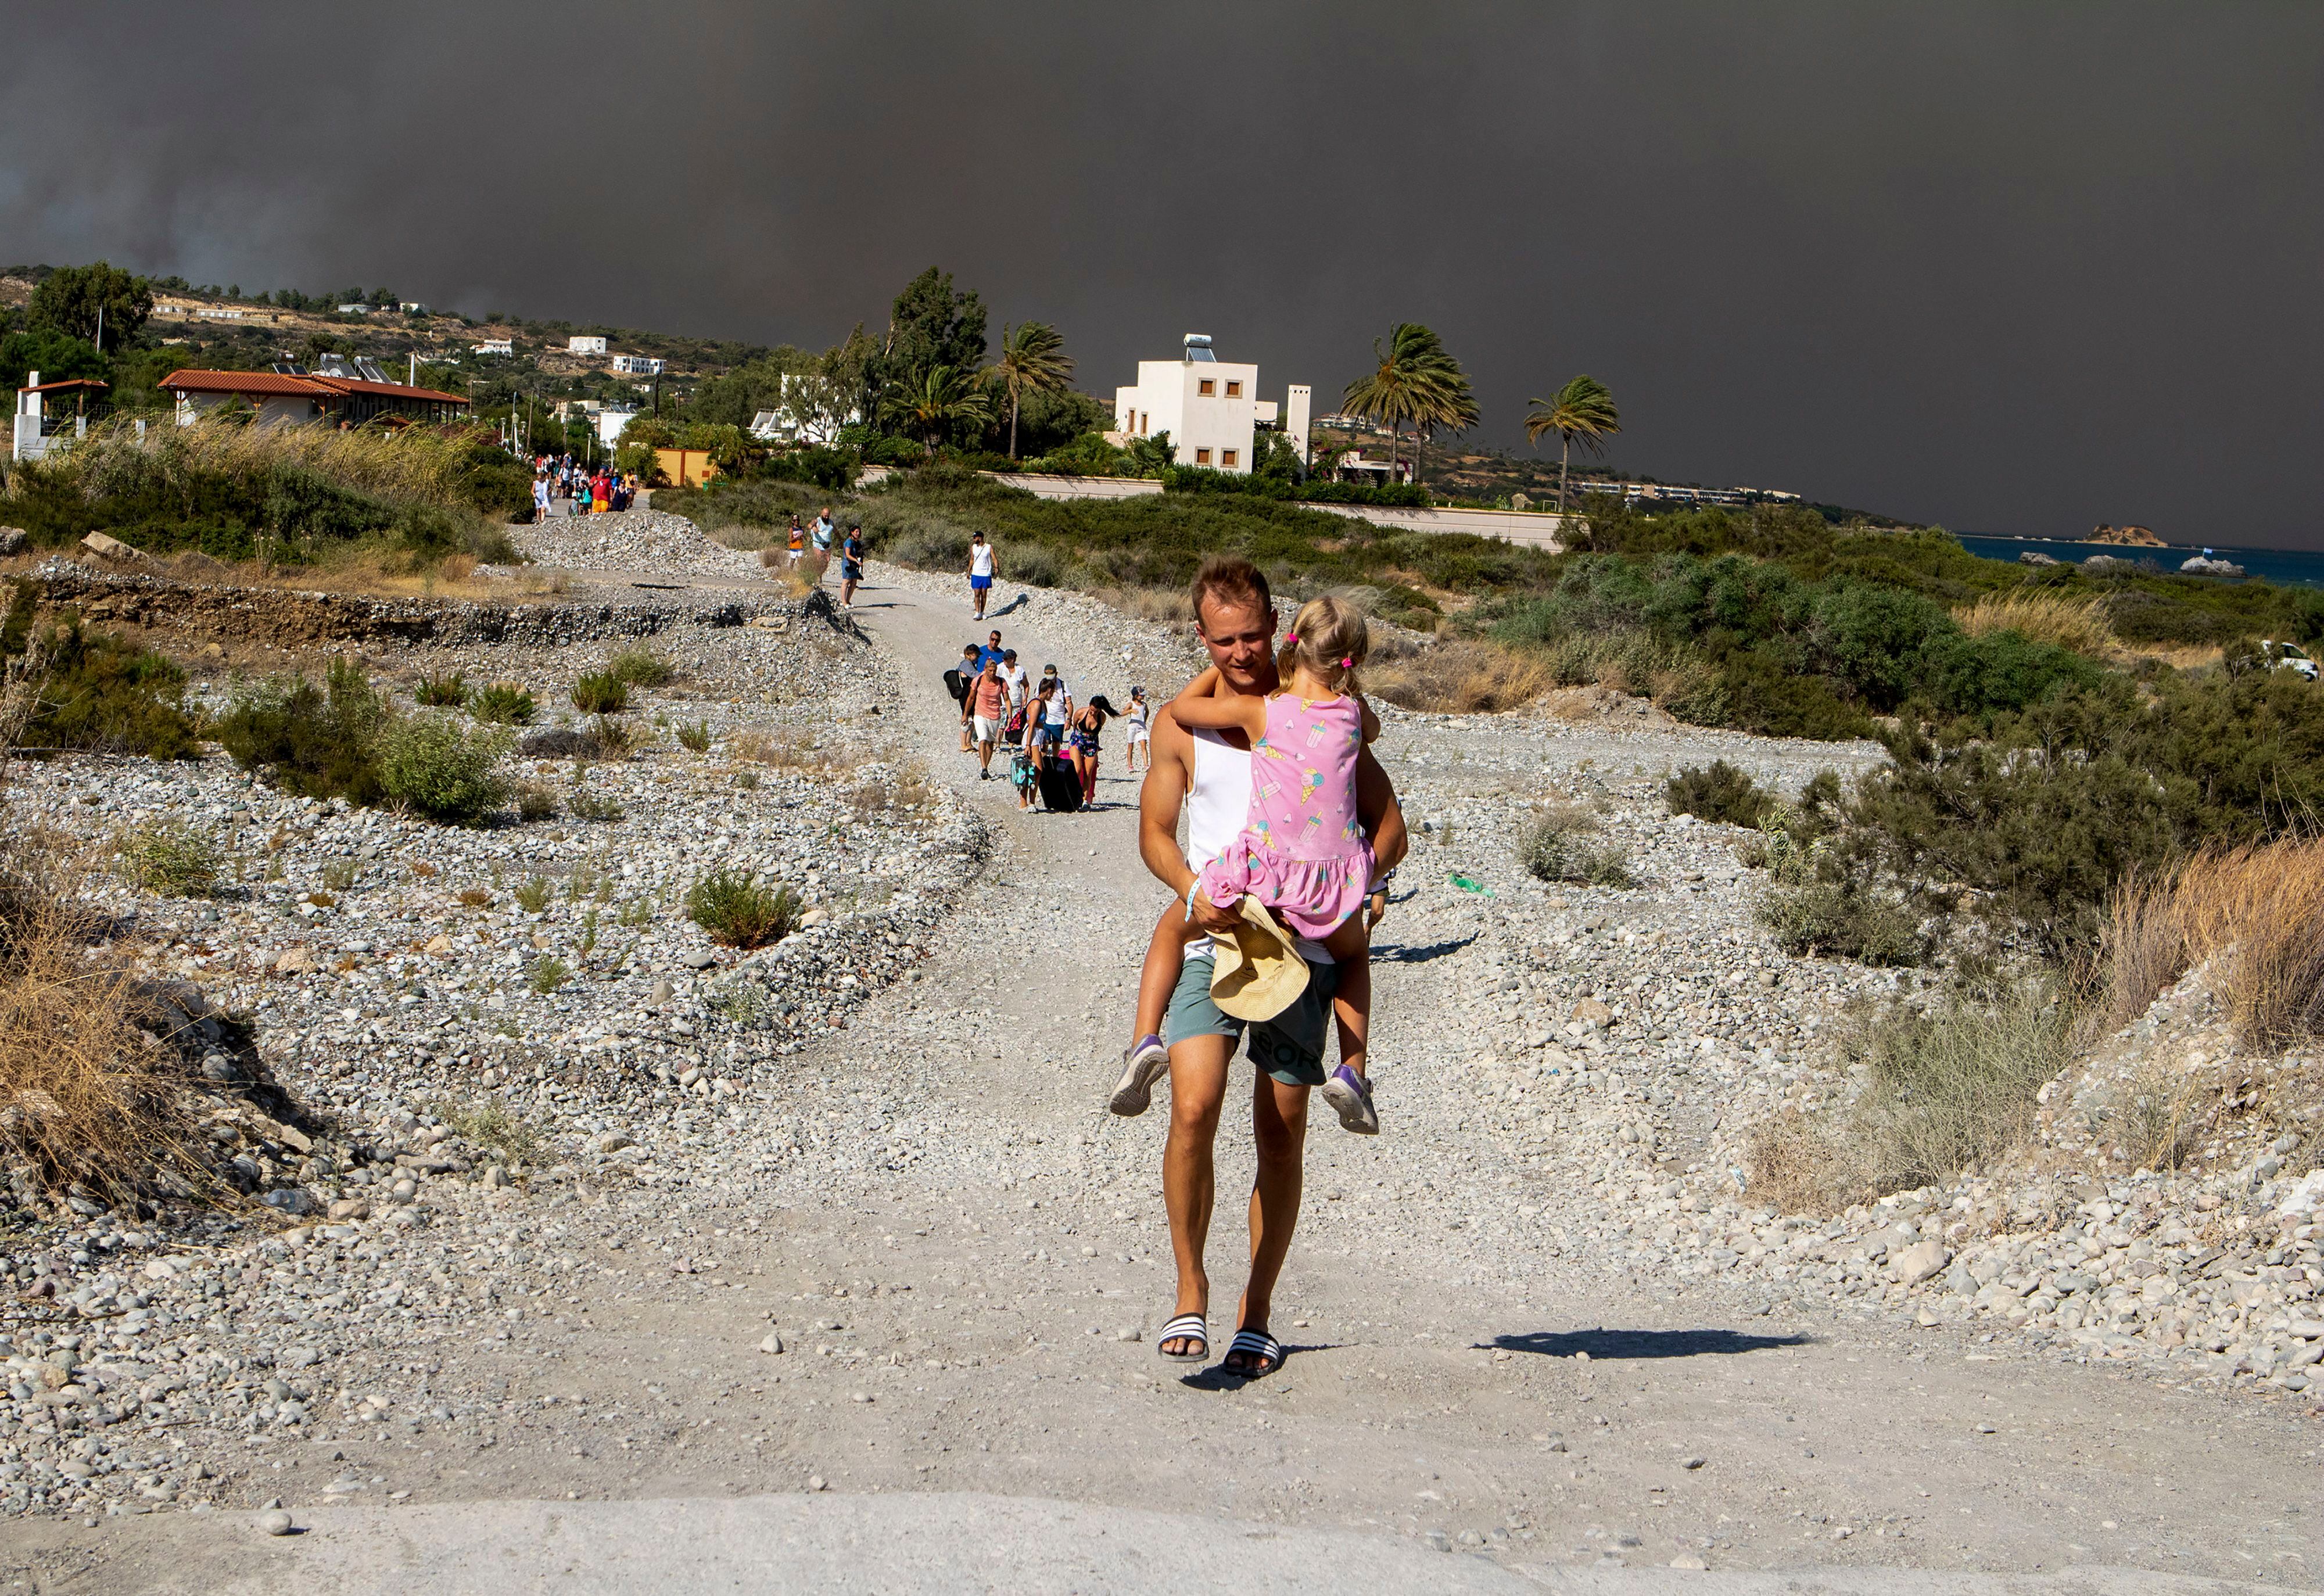 Un hombres lleva a una niña al abandonar la zona donde arde un incendio forestal en la isla de Rodas (Lefteris Diamanidis/InTime News via AP)